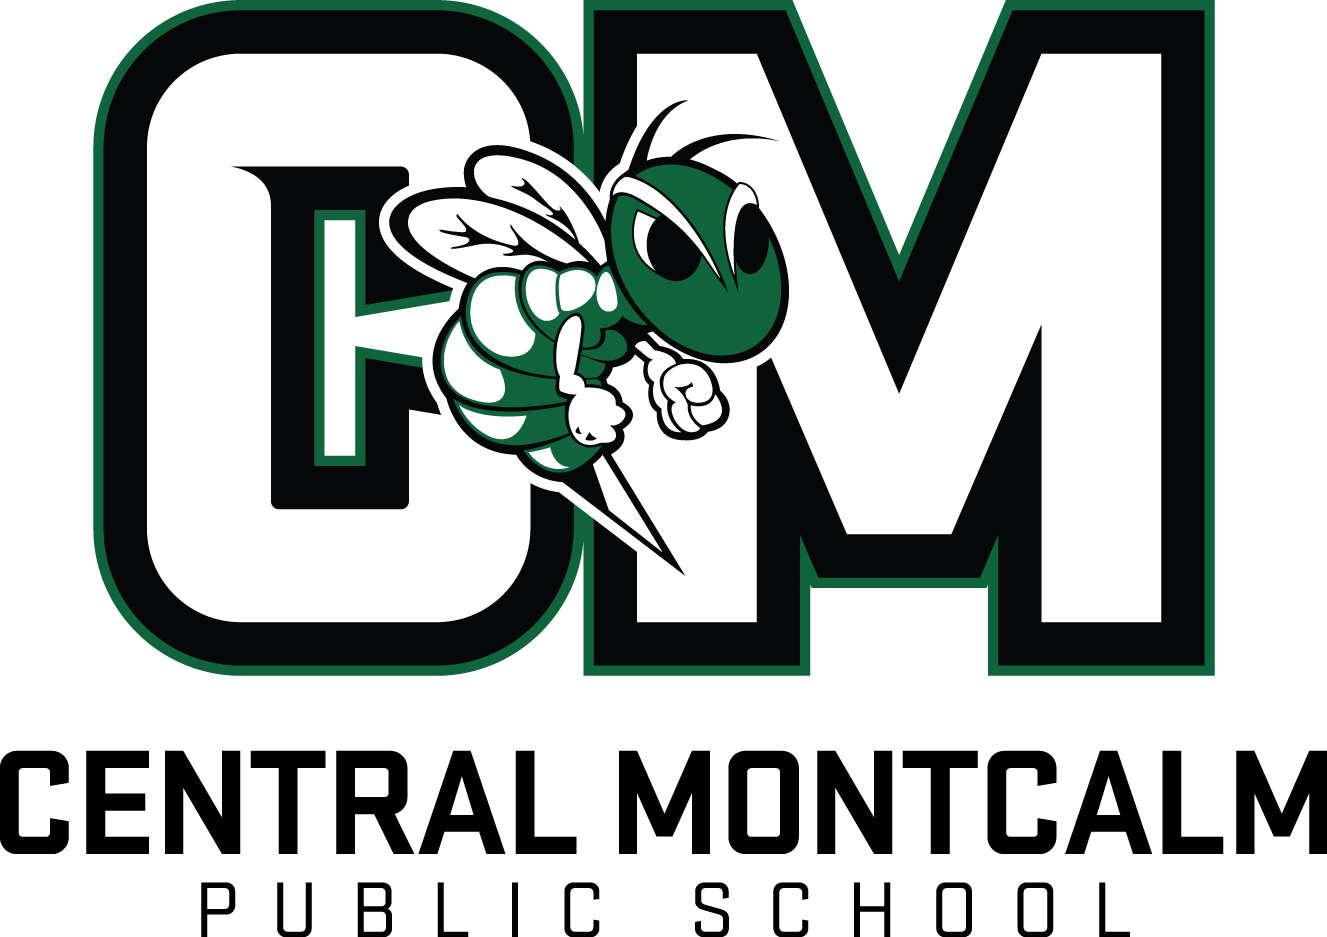 Central Montcalm Public Schools